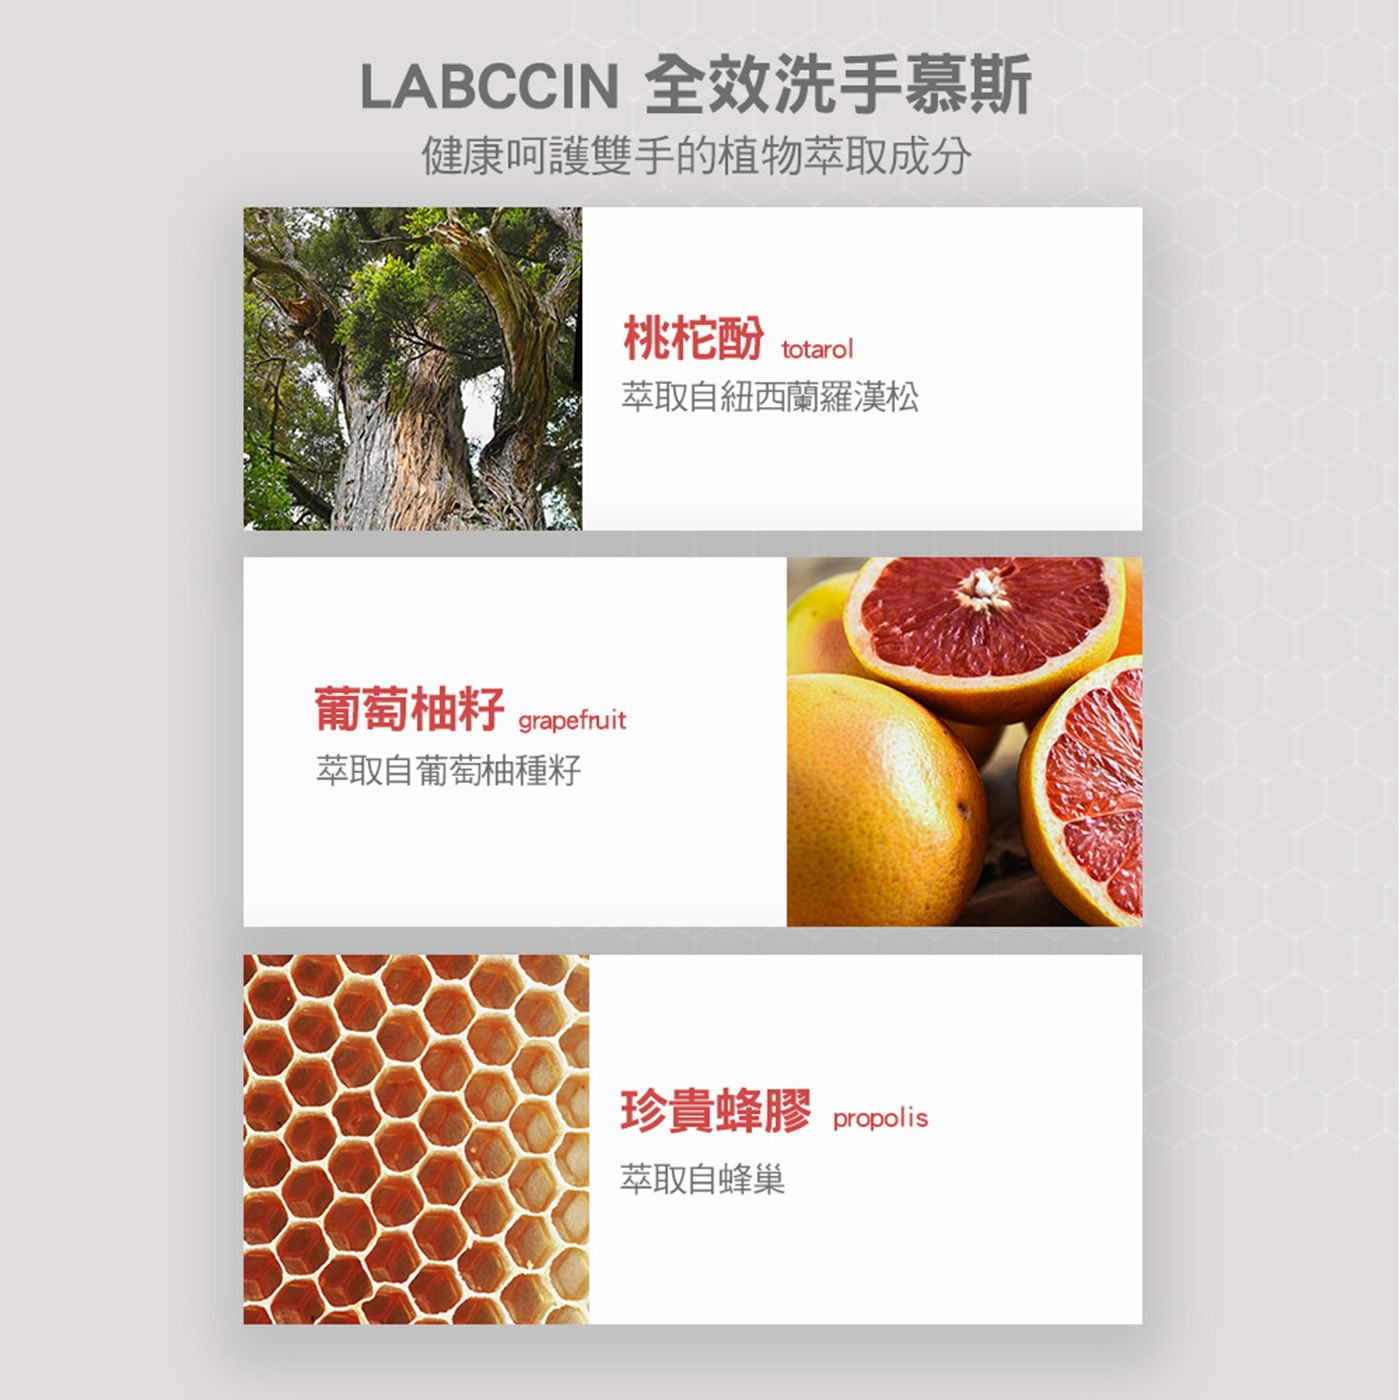 LABCCIN 全效洗手慕斯健康呵護雙手的植物萃取成分葡萄柚籽/珍貴蜂膠